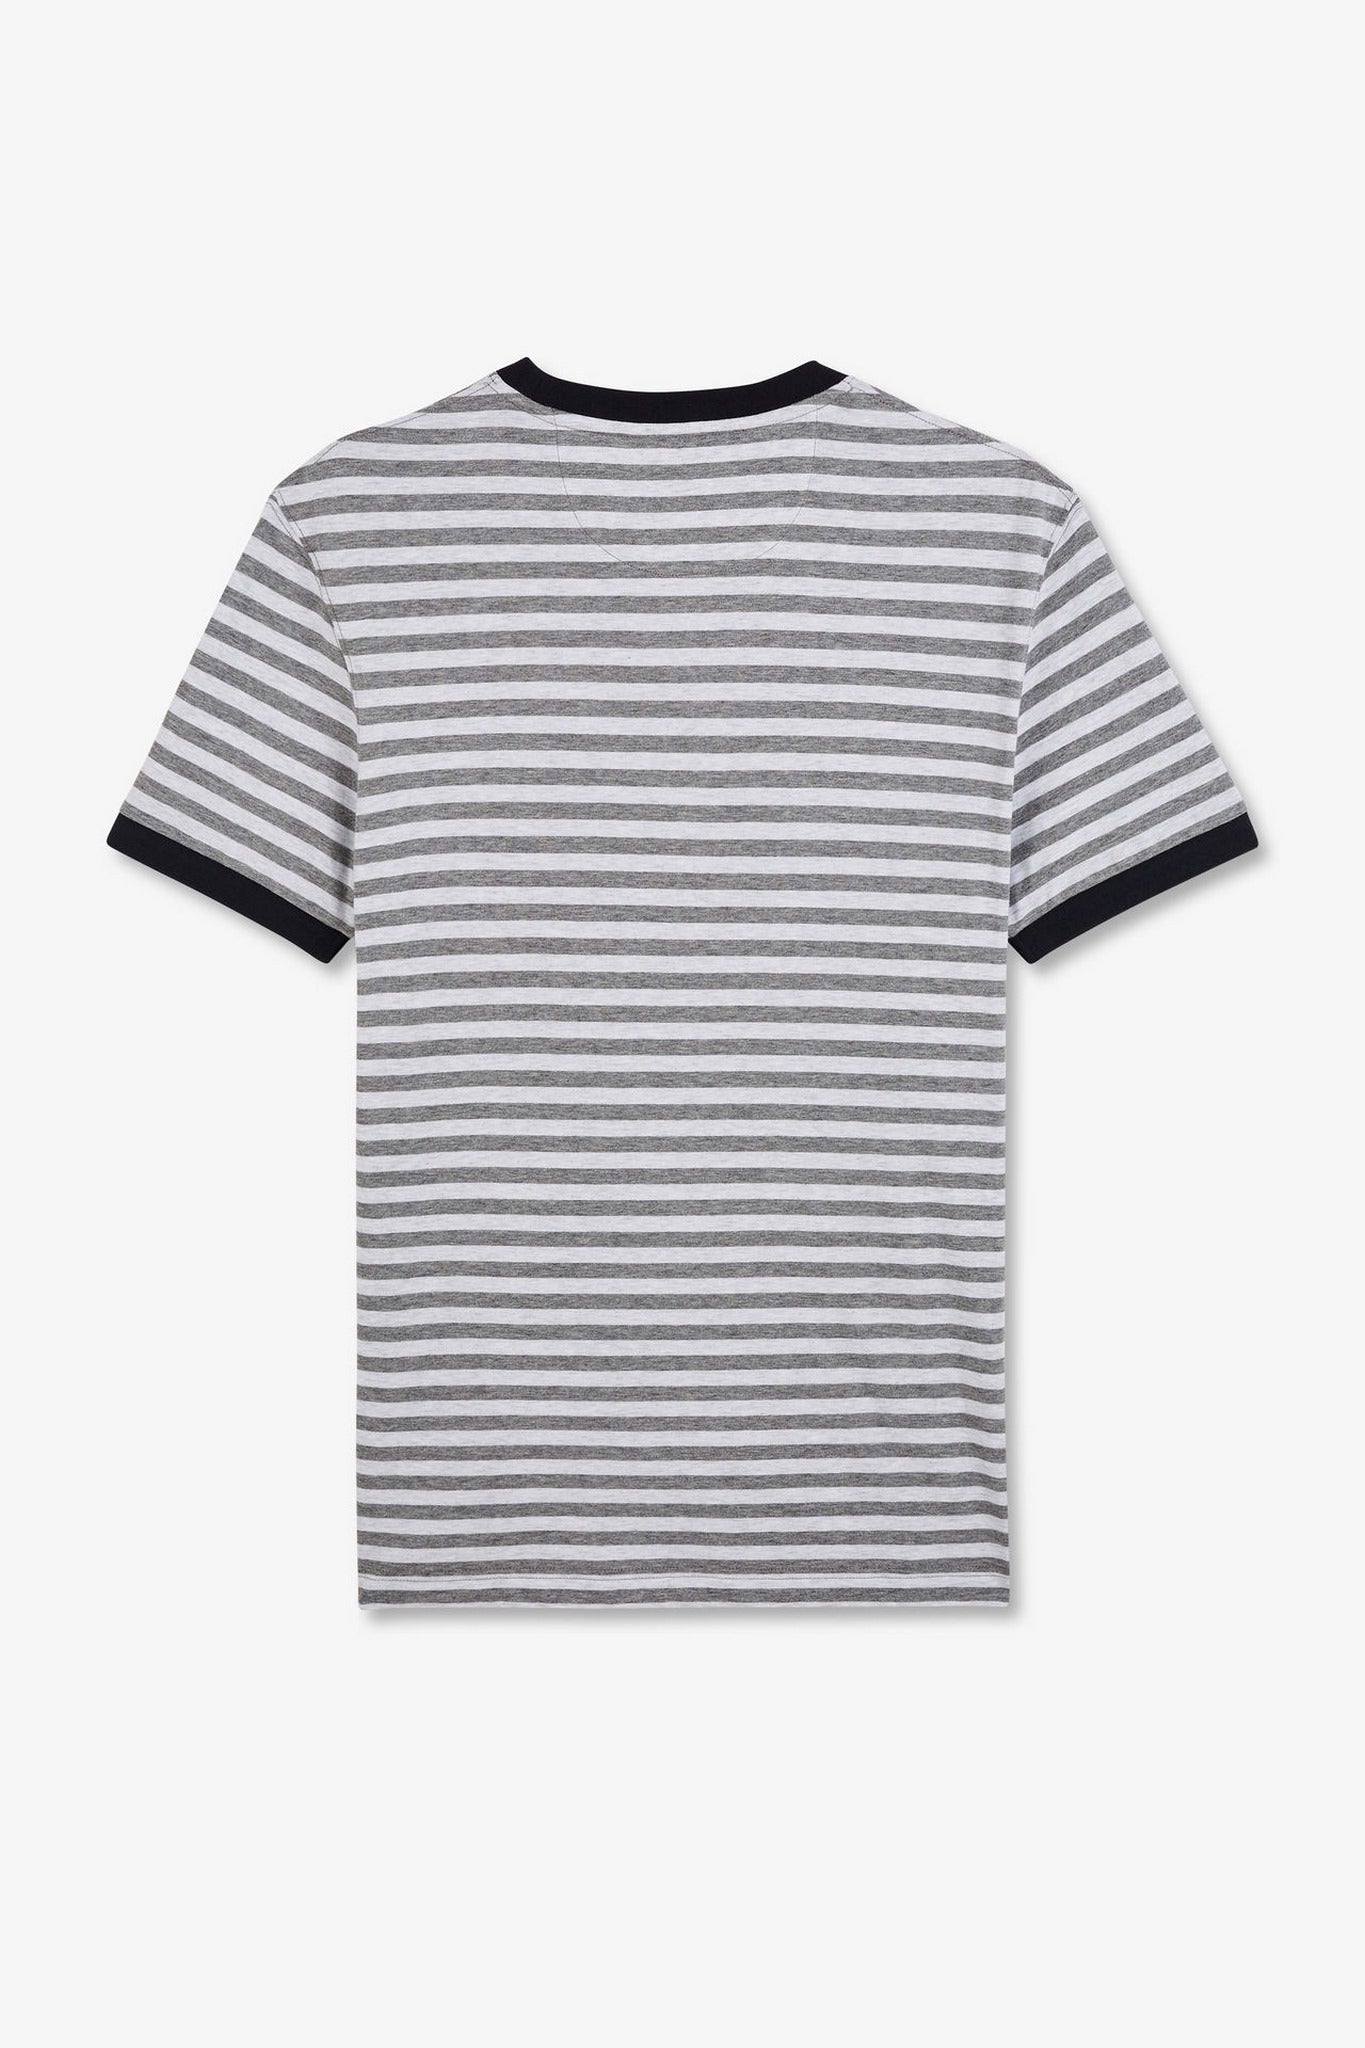 T-shirt manches courtes gris rayé - Image 5